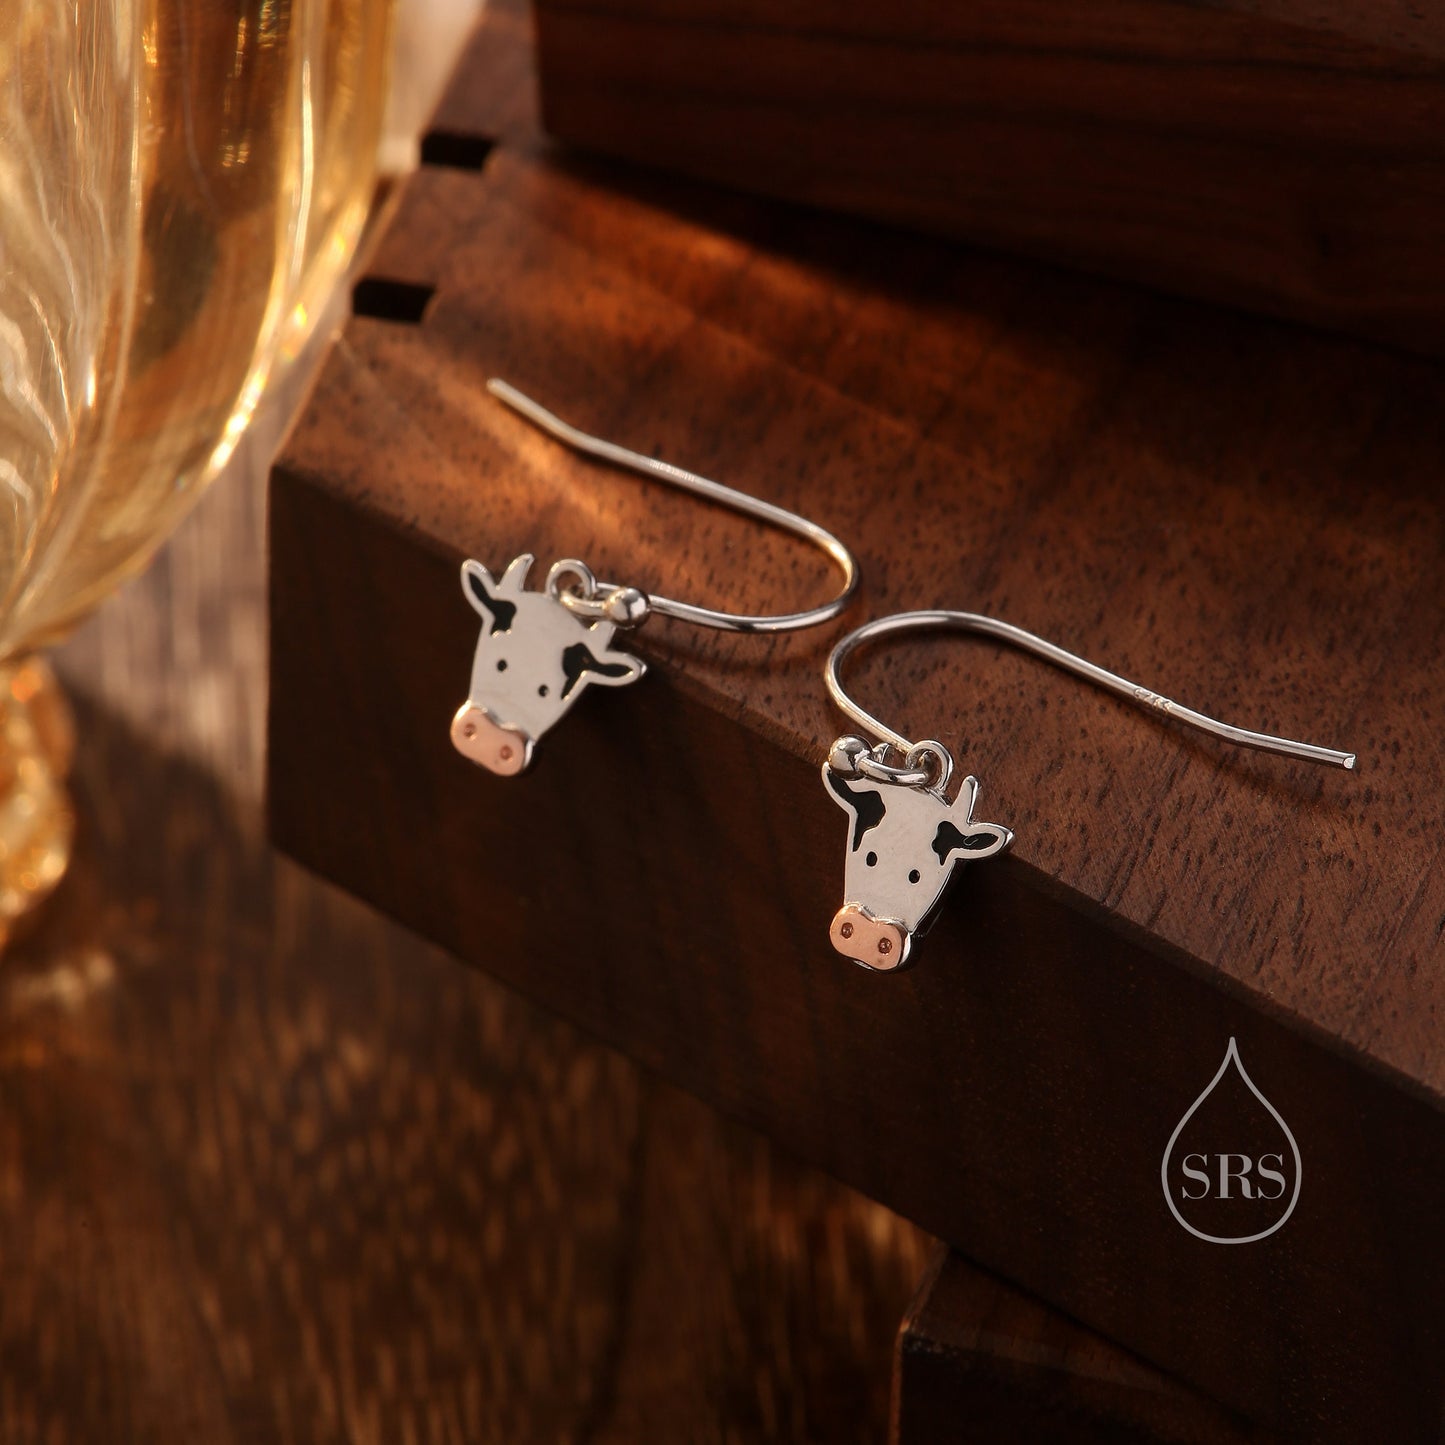 Dairy Cow Drop Dangling Earrings in Sterling Silver, Cow Earrings, Cow Hook Earrings, Scottish Farm Animal Earrings